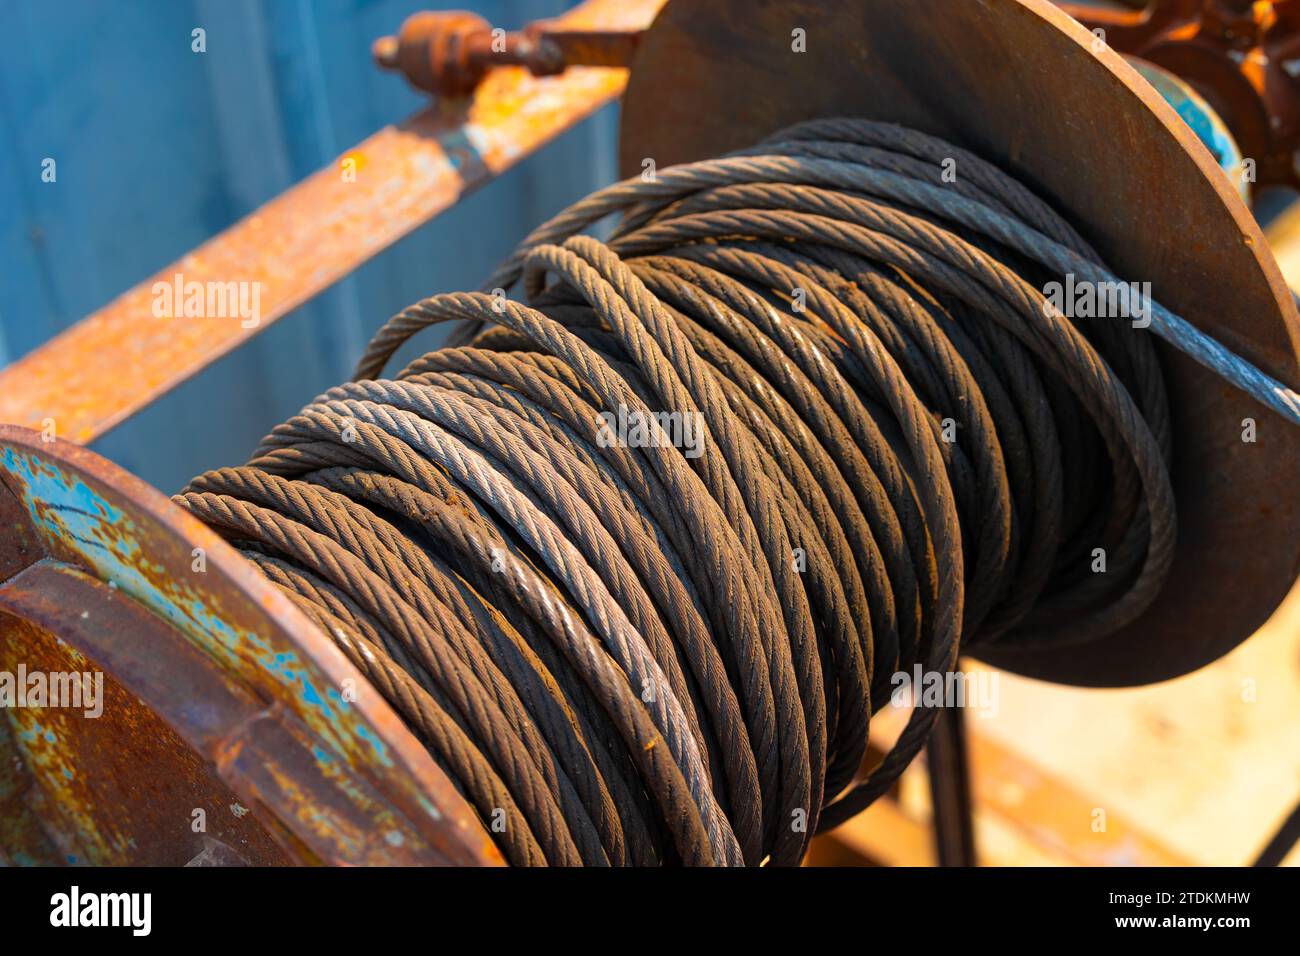 Rost altes Industriestahlleitung verwendet alter, geschliffener, verwitterter Stahldraht oder Stahlseil, Seilschlinge Trommel. Stockfoto